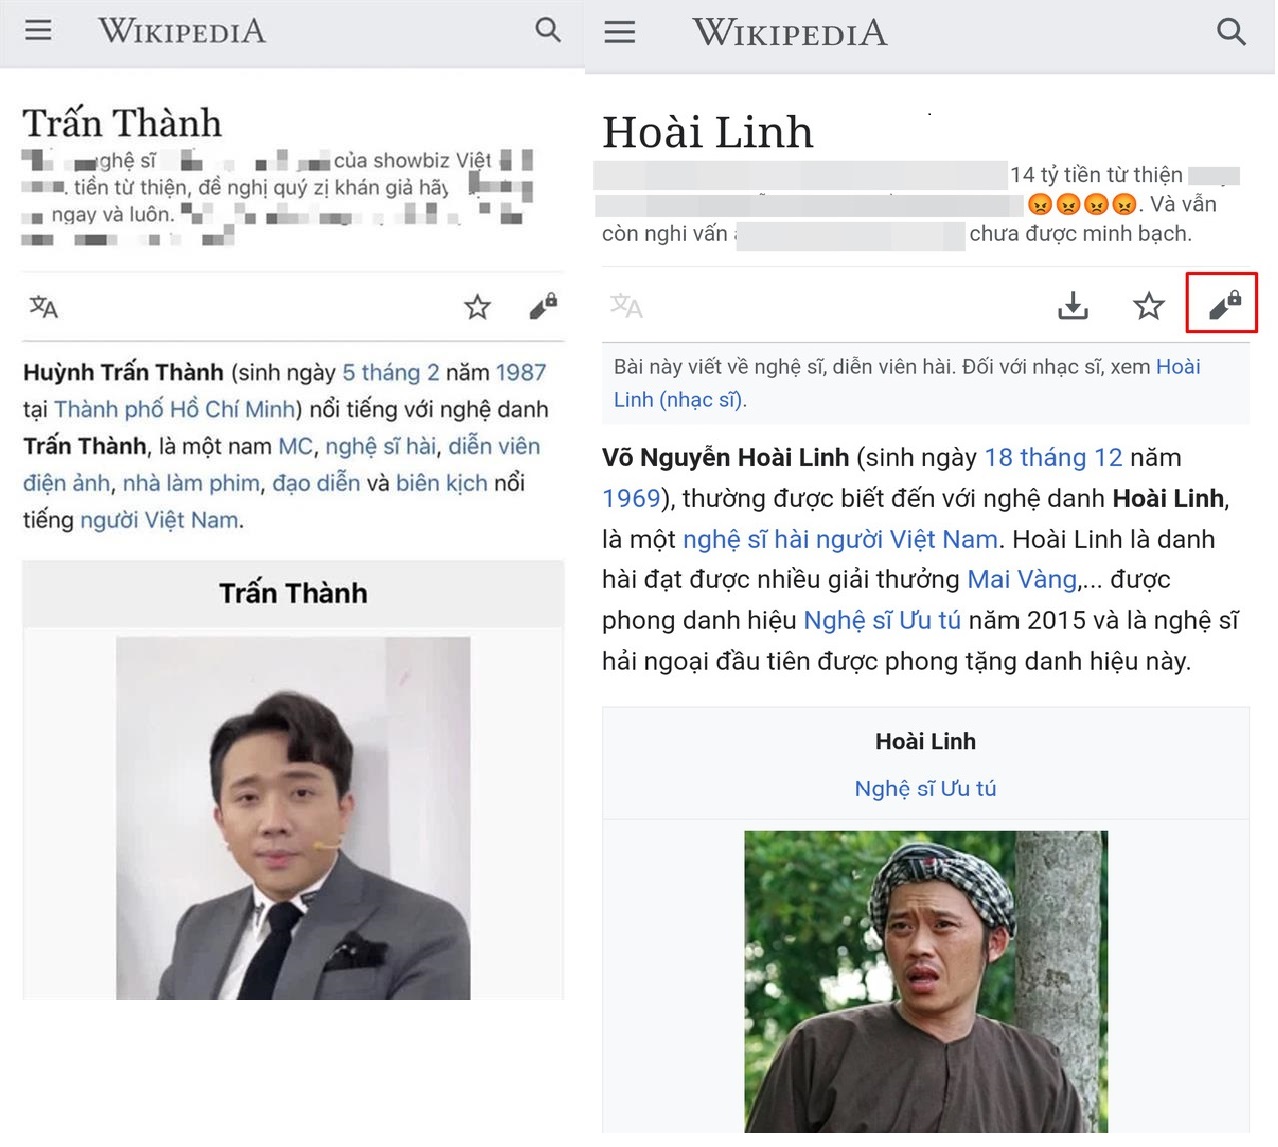 Nghệ Sĩ Khốn Khổ Với Tính 'Mở' Của Wikipedia Tiếng Việt